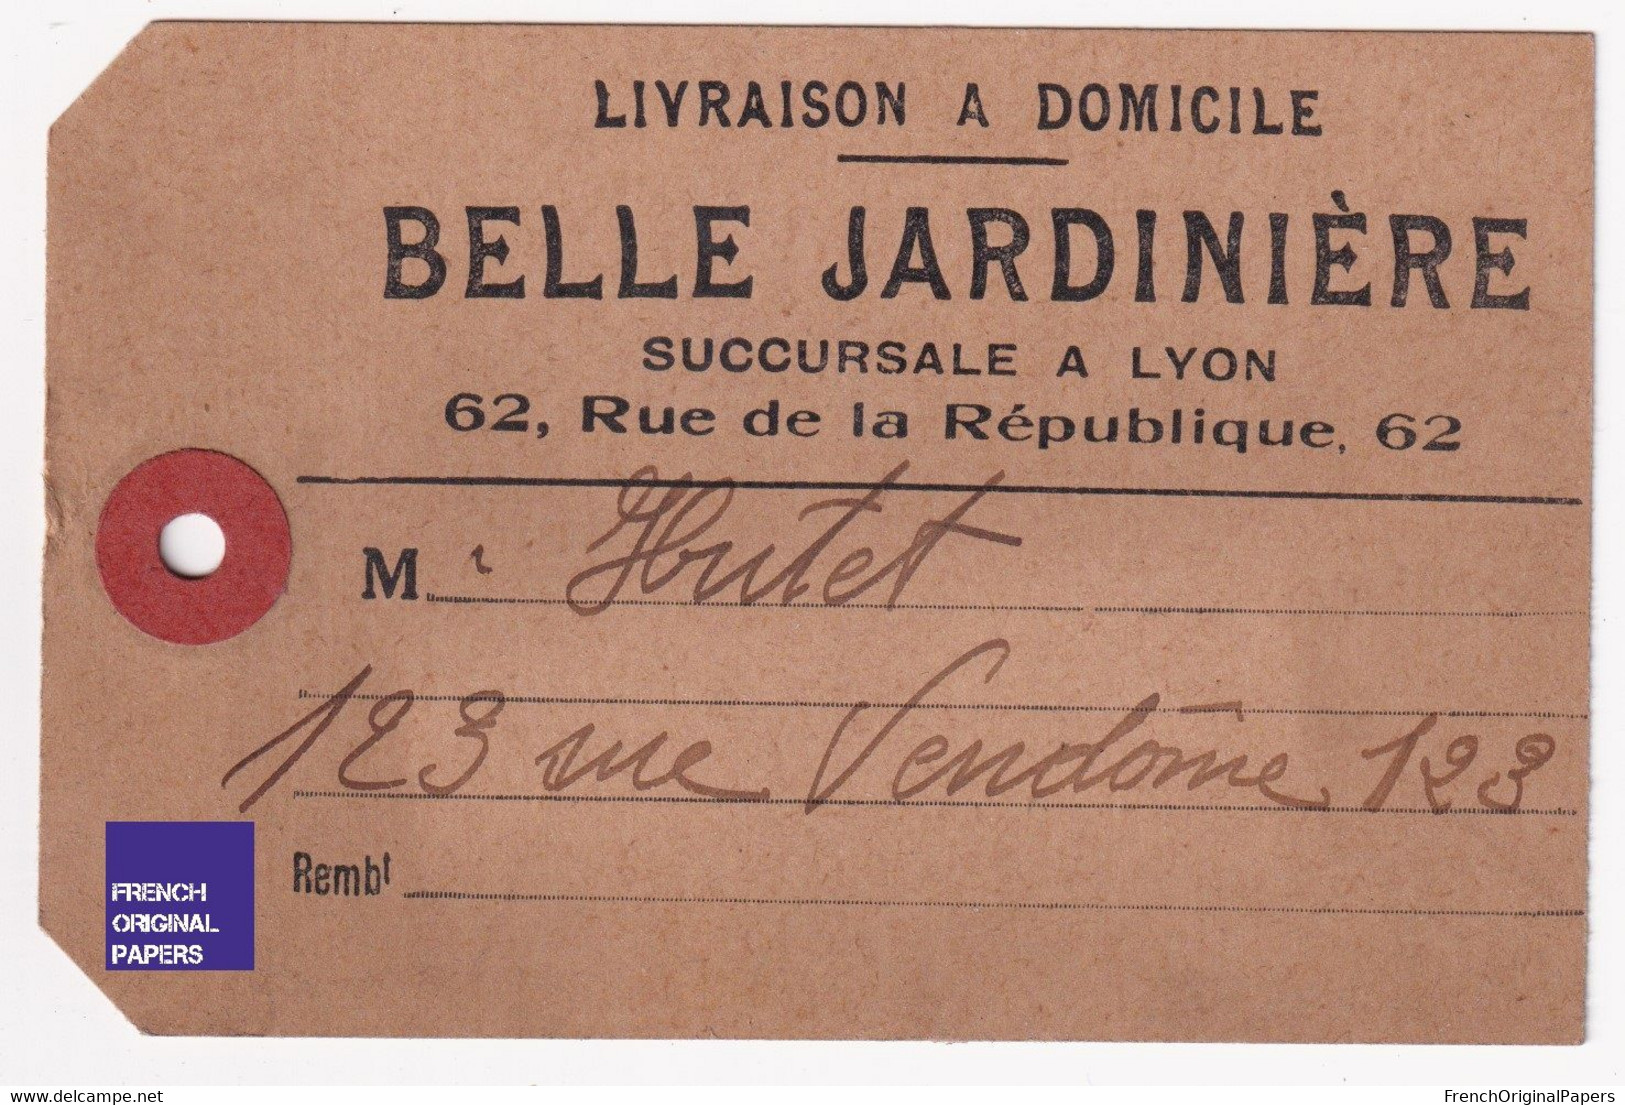 Rare étiquette De Colis De Livraison - Magasin Belle Jardinière Succursale De Lyon Années 1900/10 123 Rue Vendôme A55-76 - Publicités